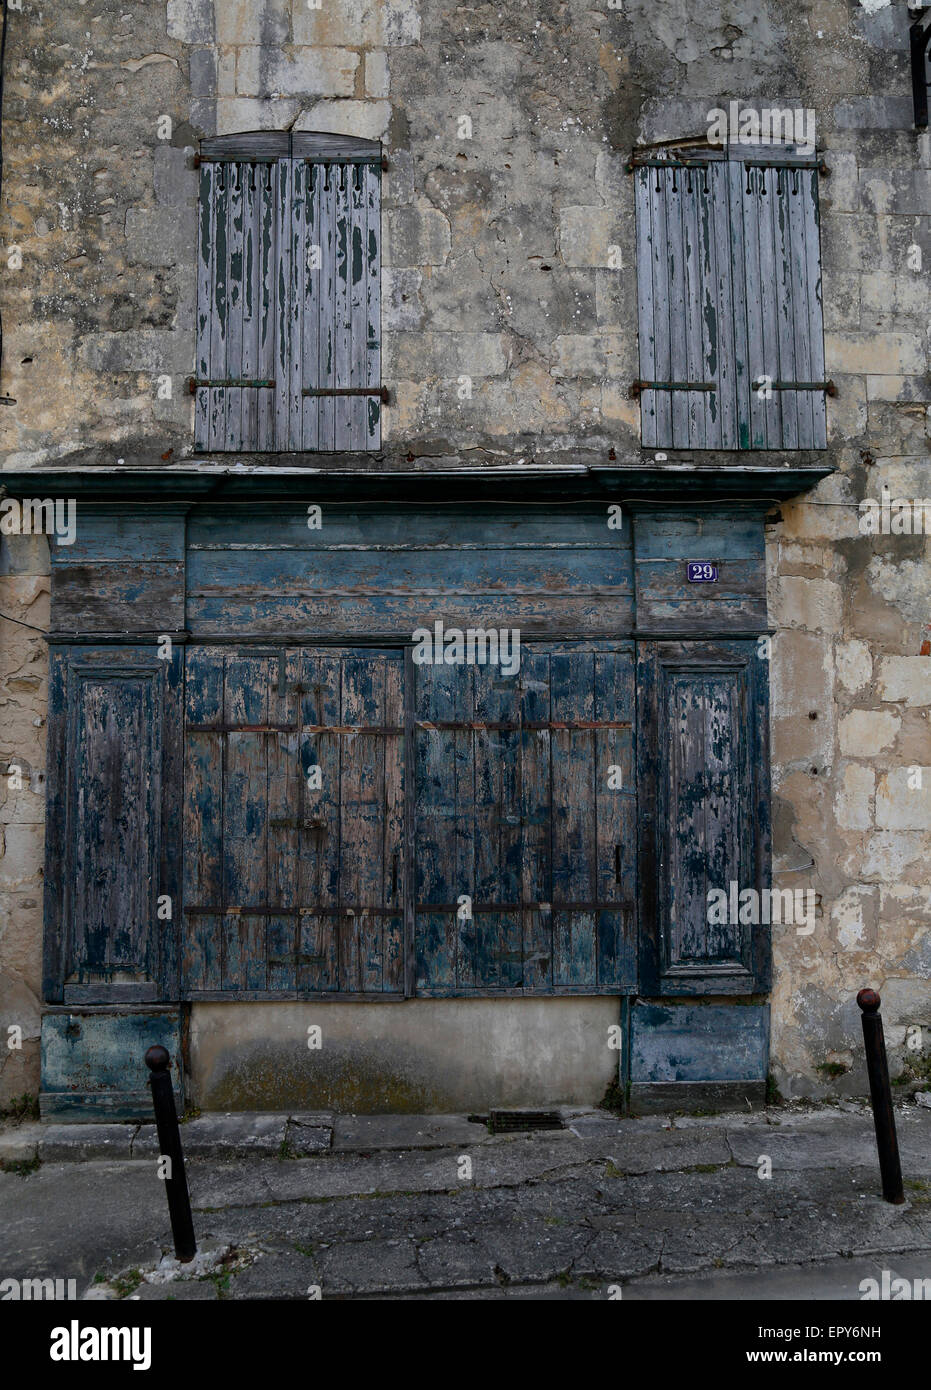 Street view à Saint-Martin-de-Ré, Charente-Maritime, France. Banque D'Images